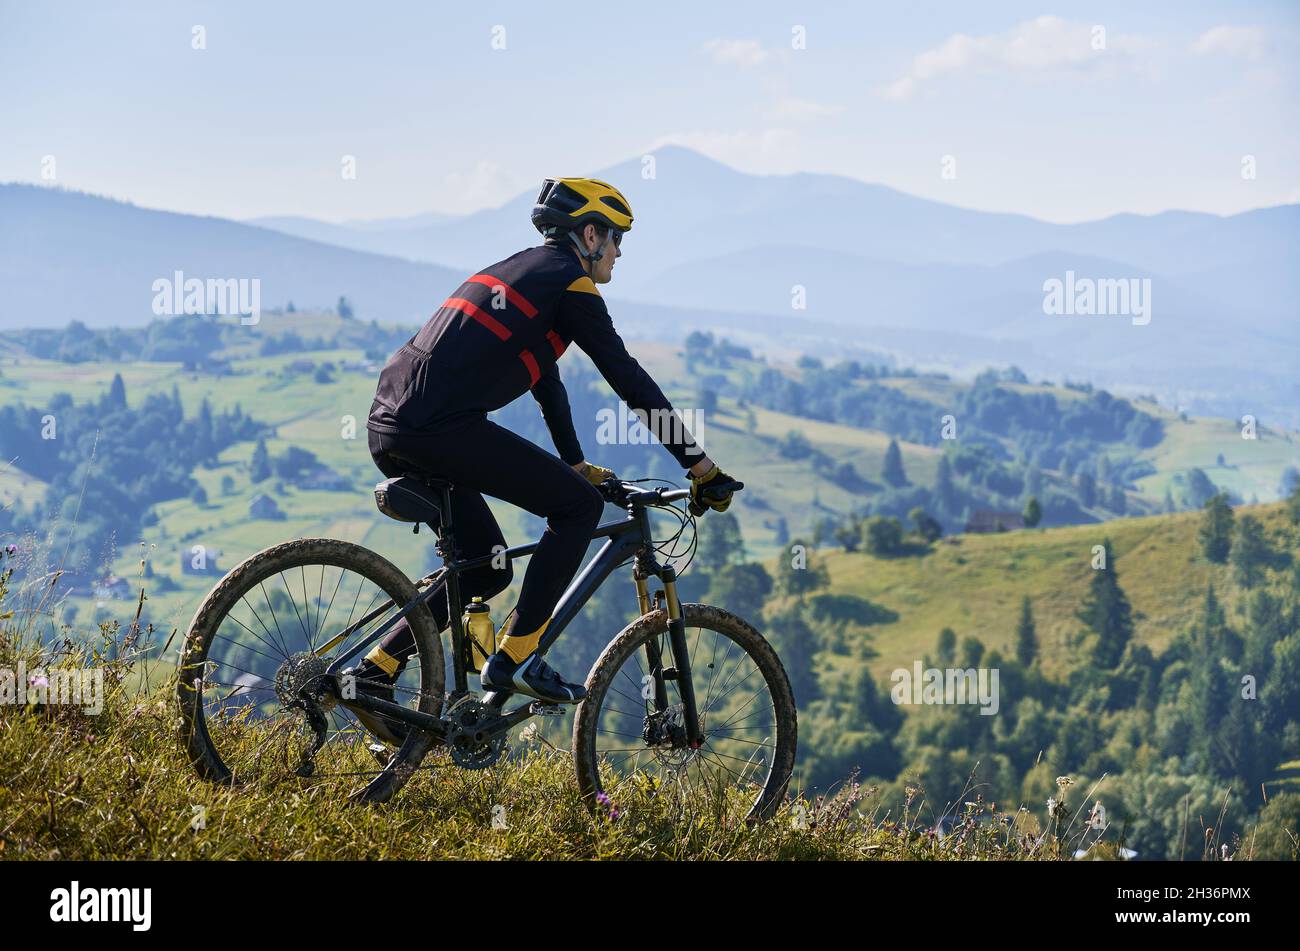 Mann, der am frühen nebligen Morgen mit dem Fahrrad in den Bergen fährt und bergab fährt. Gipfel in Wolken, grüne Hügel im Hintergrund. Seitenansicht. Konzept des aktiven Lebensstils Stockfoto